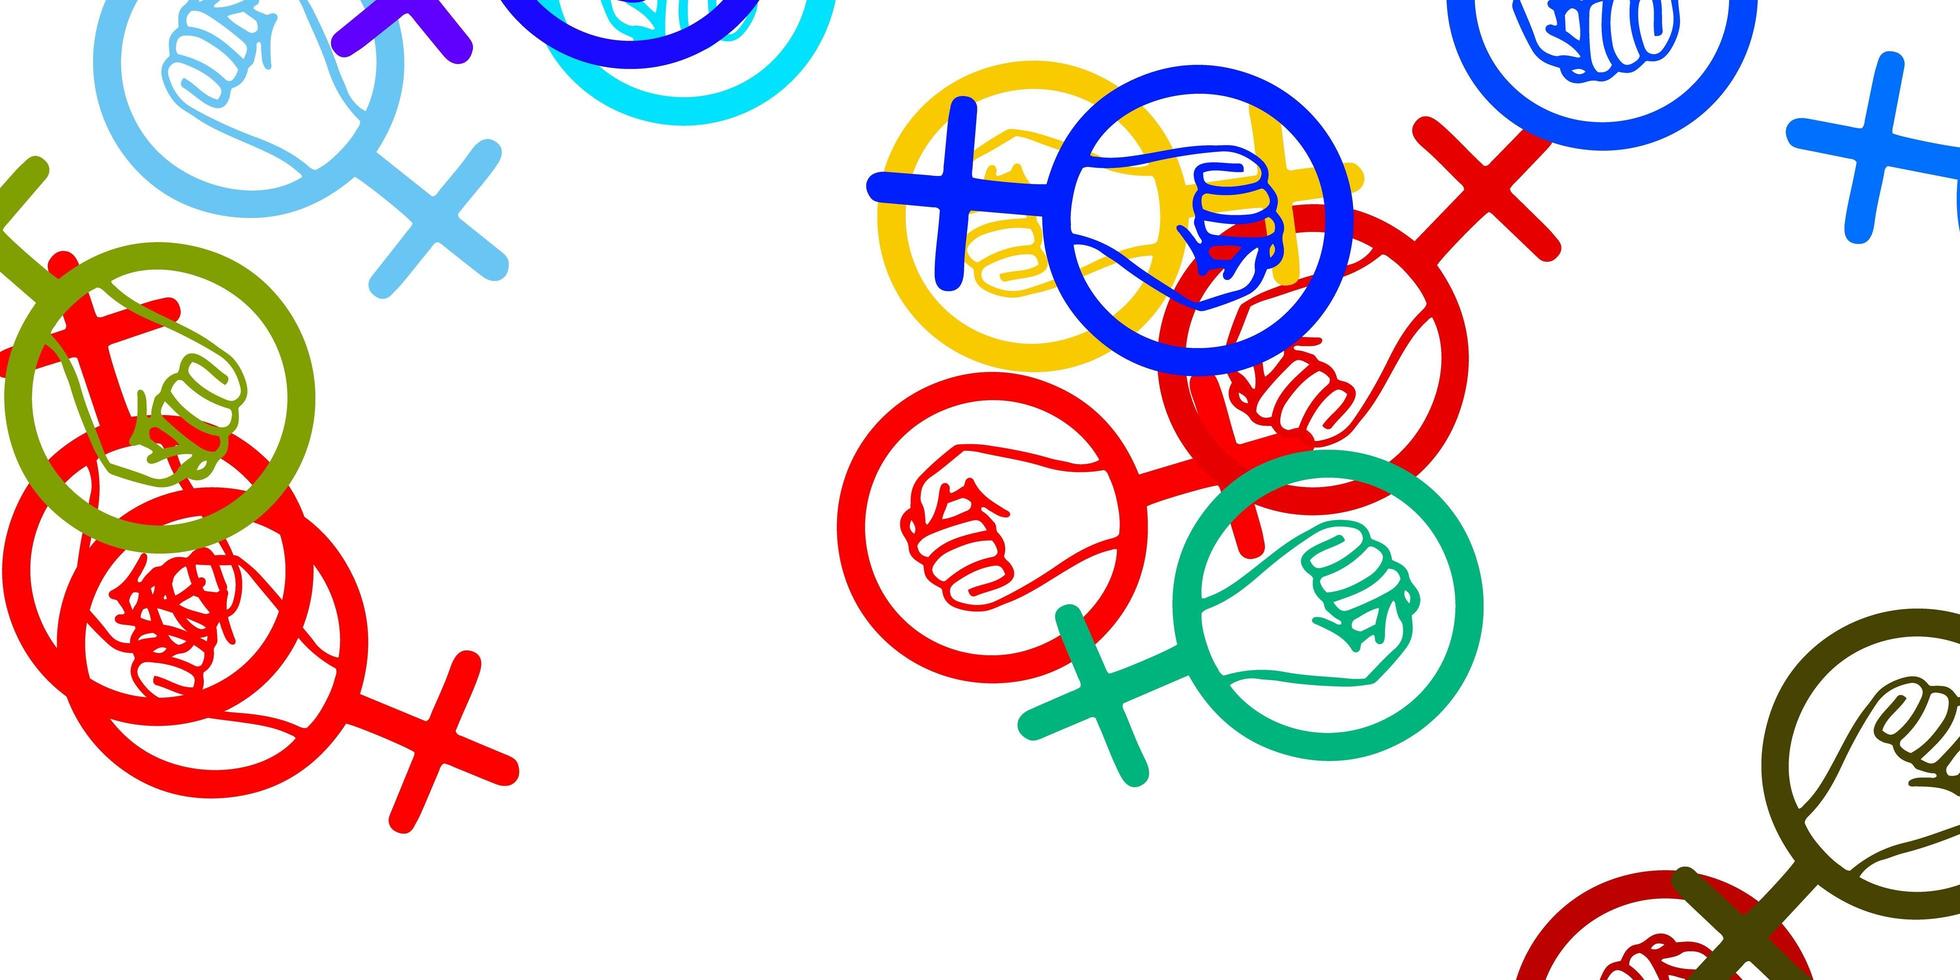 texture de vecteur multicolore clair avec symboles des droits des femmes.